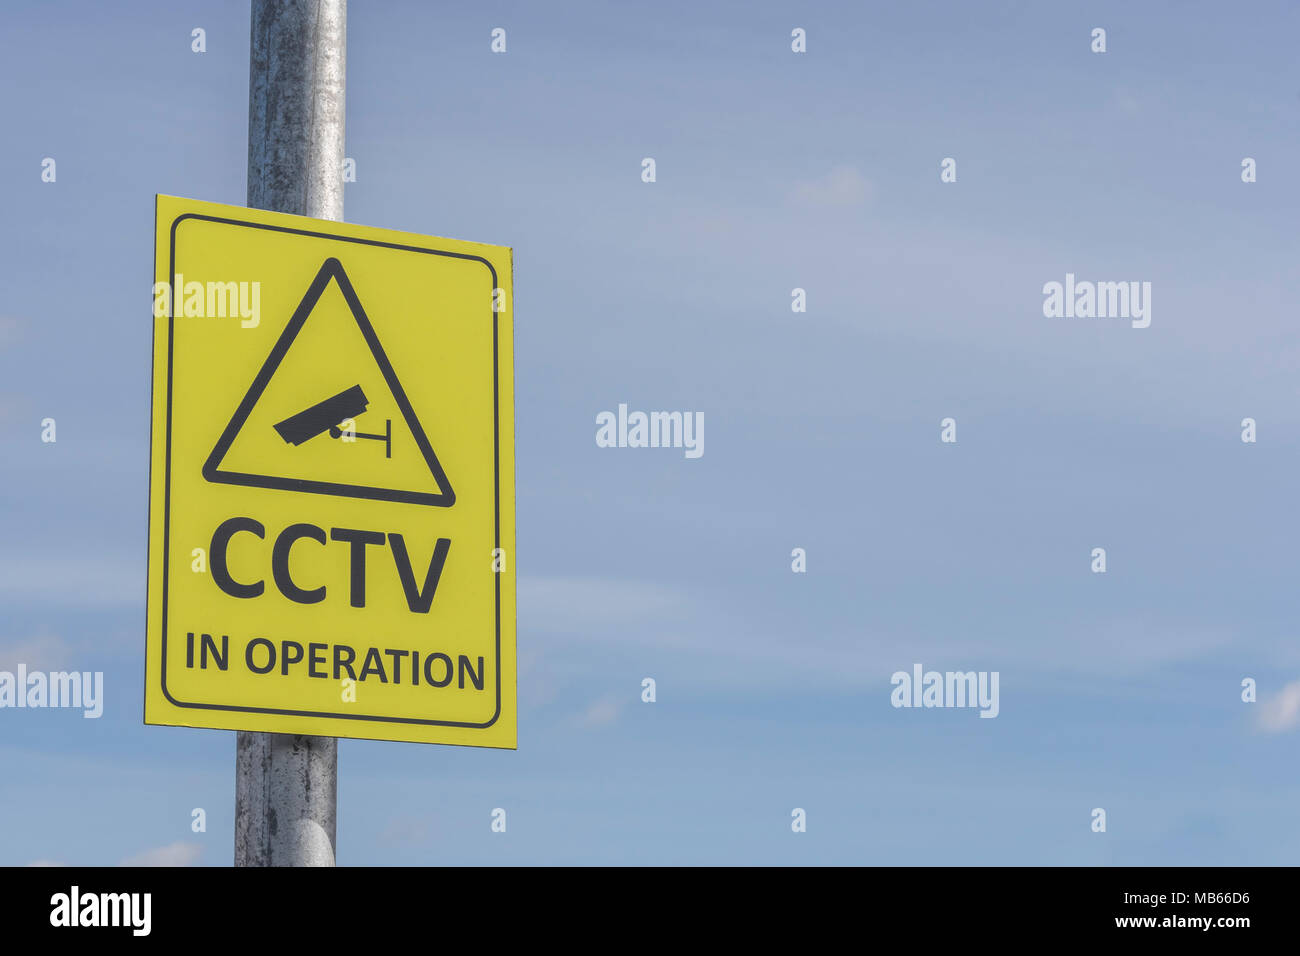 Tvcc telecamera di sicurezza nel funzionamento simbolo giallo di avvertimento - Guardando sopra di voi, sorveglianza / orwelliana / Big Brother / la raccolta di dati di intelligence concetti. Foto Stock